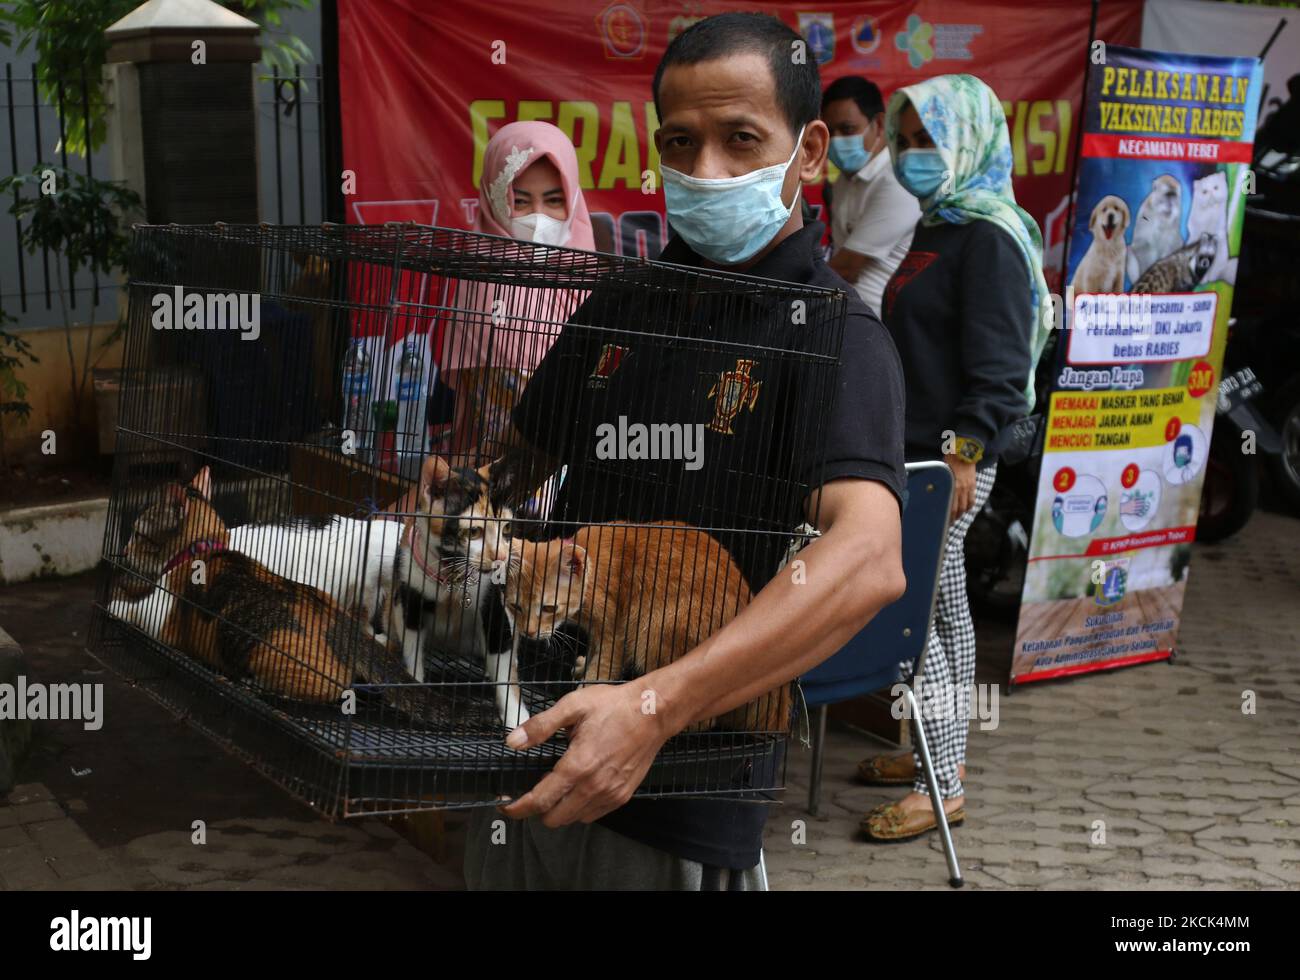 BUKIT DURI, JAKARTA, AGUSTUS - 24 : Petugas Sudin Ketahanan Pangan, Kelautan dan Pertanian (KPKP) menyuntikkan vaksin rabies kepada kucing peliharaan milik warga di Kelurahan Bukit Duri, Jakarta, pada Agustus, 24,2021. Vaksinasi rabies yang diberikan oleh Sudin Ketahanan Pangan, Kelautan dan Pertanian (KPKP) ini bertujuan mencegah penyebaran penyakit rabies di wilayah Jakarta Selatan serta menjaga kesehatan hewan peliharaan milik warga. (Photo by Dasril Roszandi/NurPhoto) Stock Photo